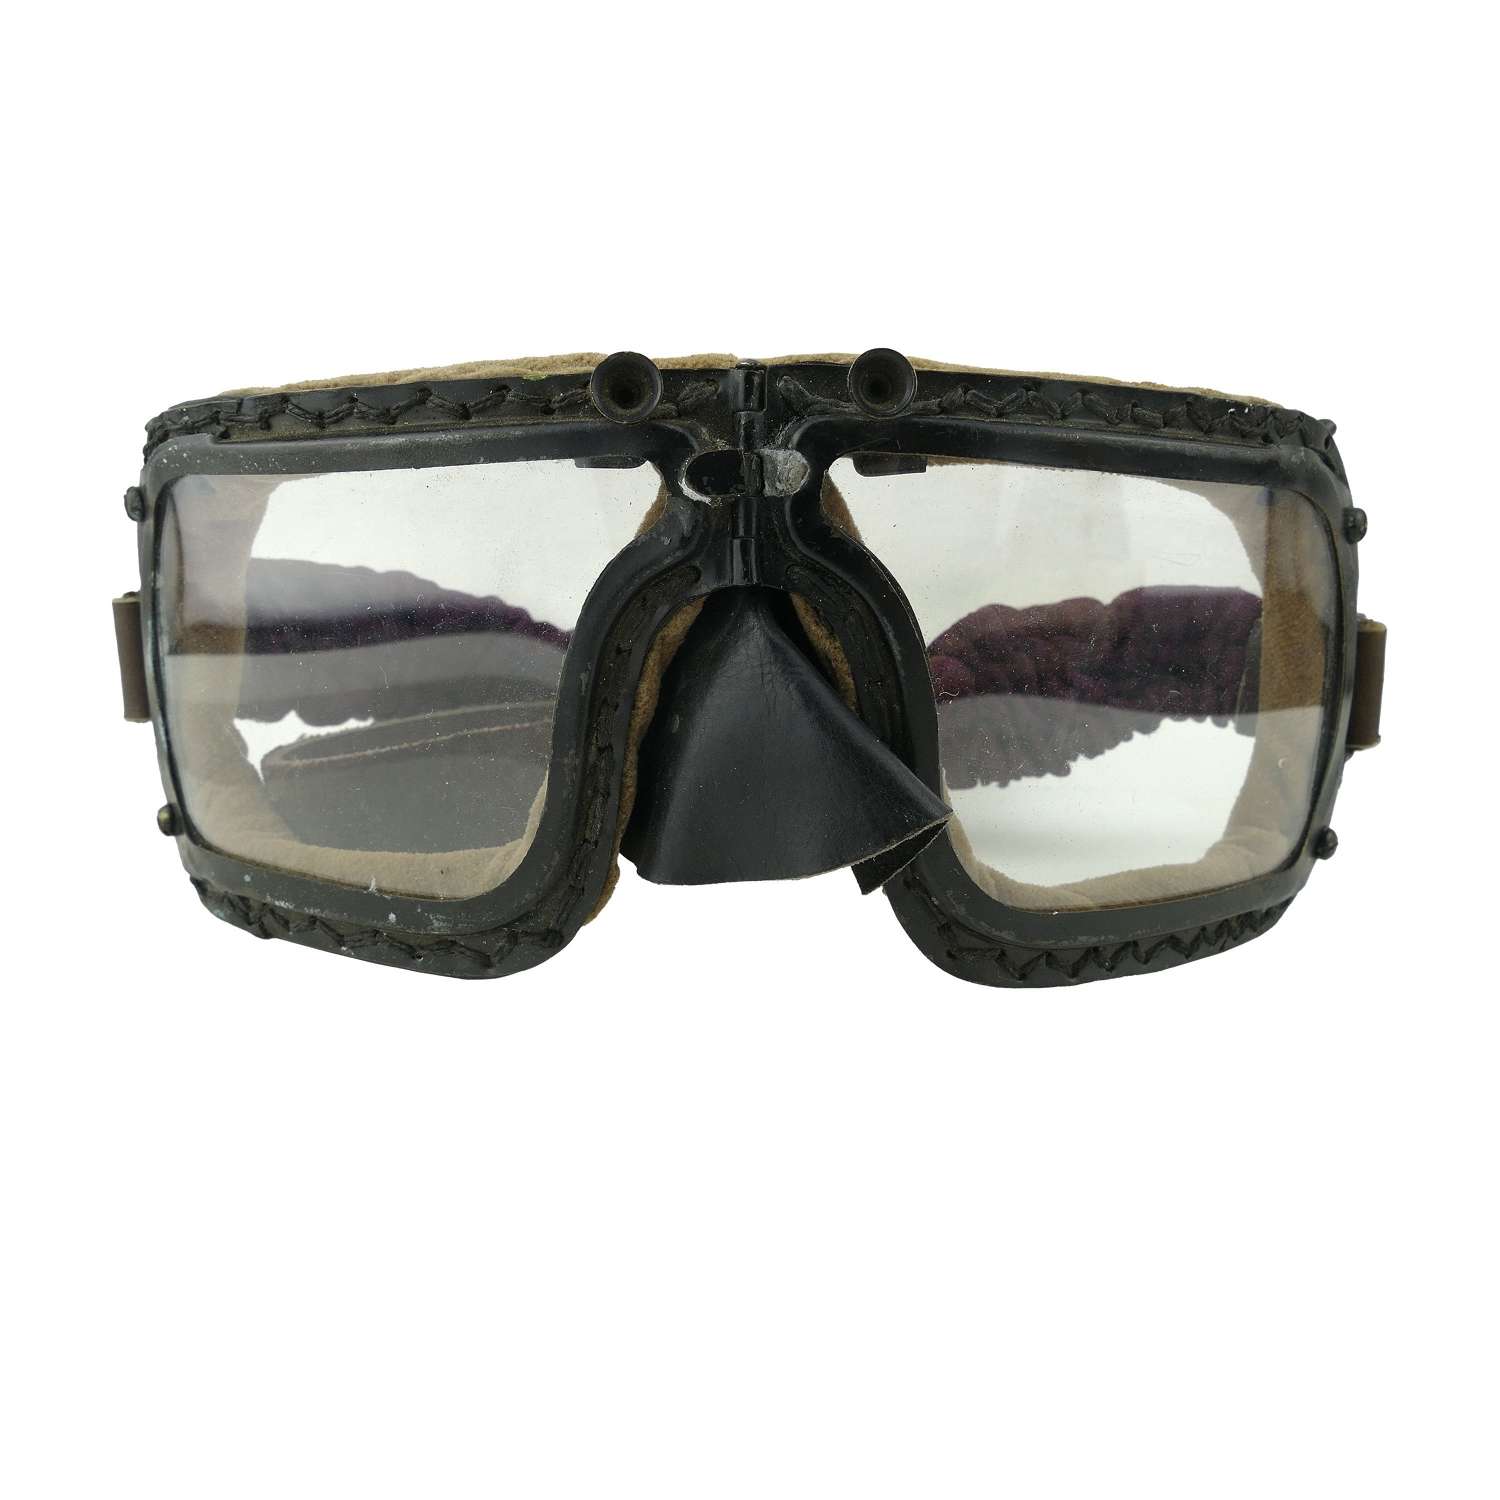 RAAF MK.IIIA flying goggles